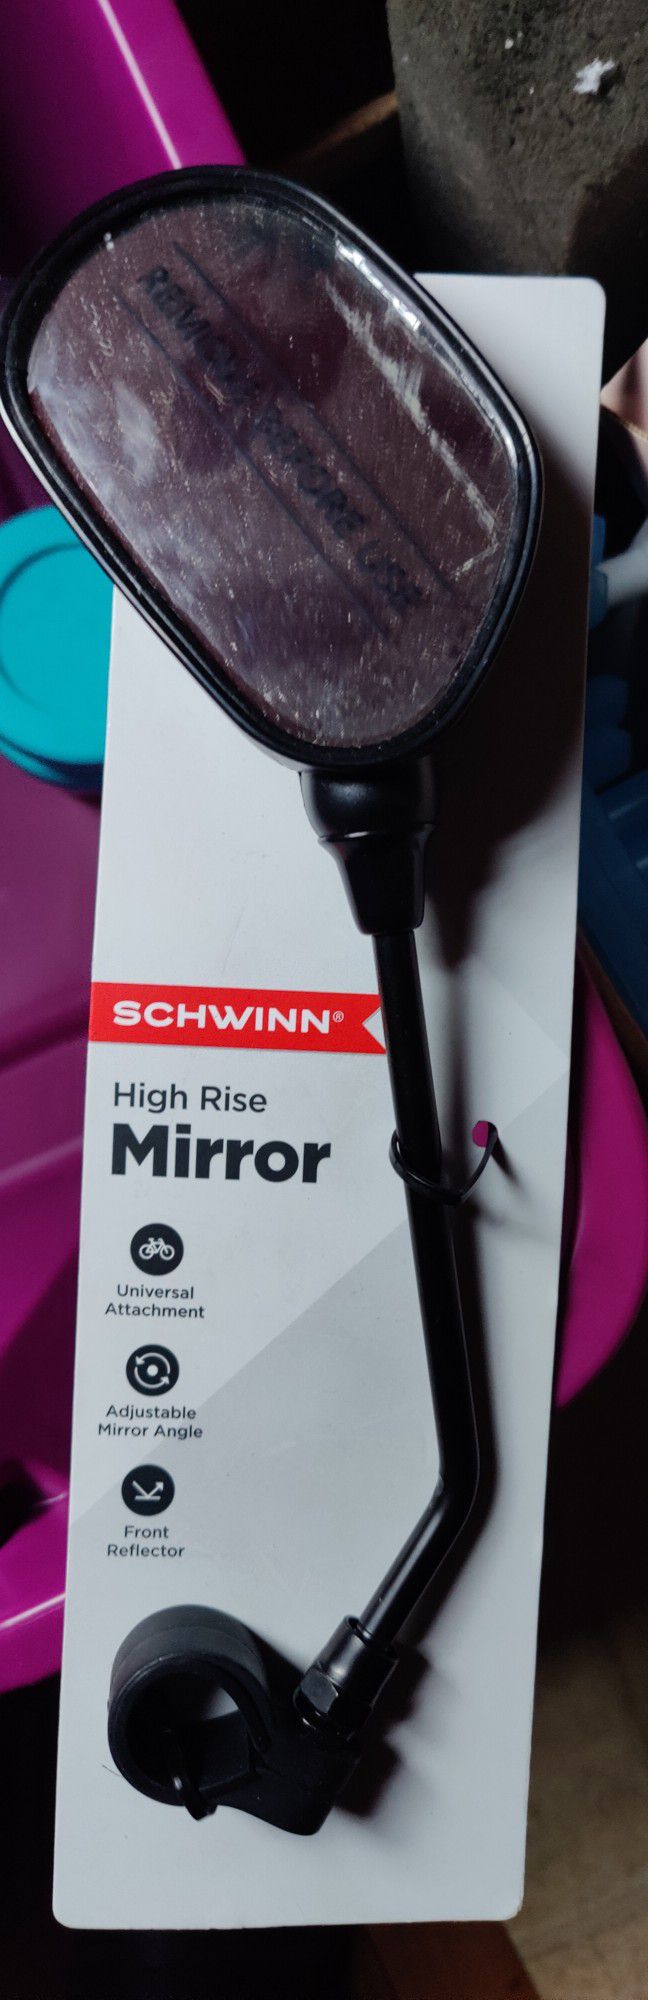 Schwinn Mirror For Bikes